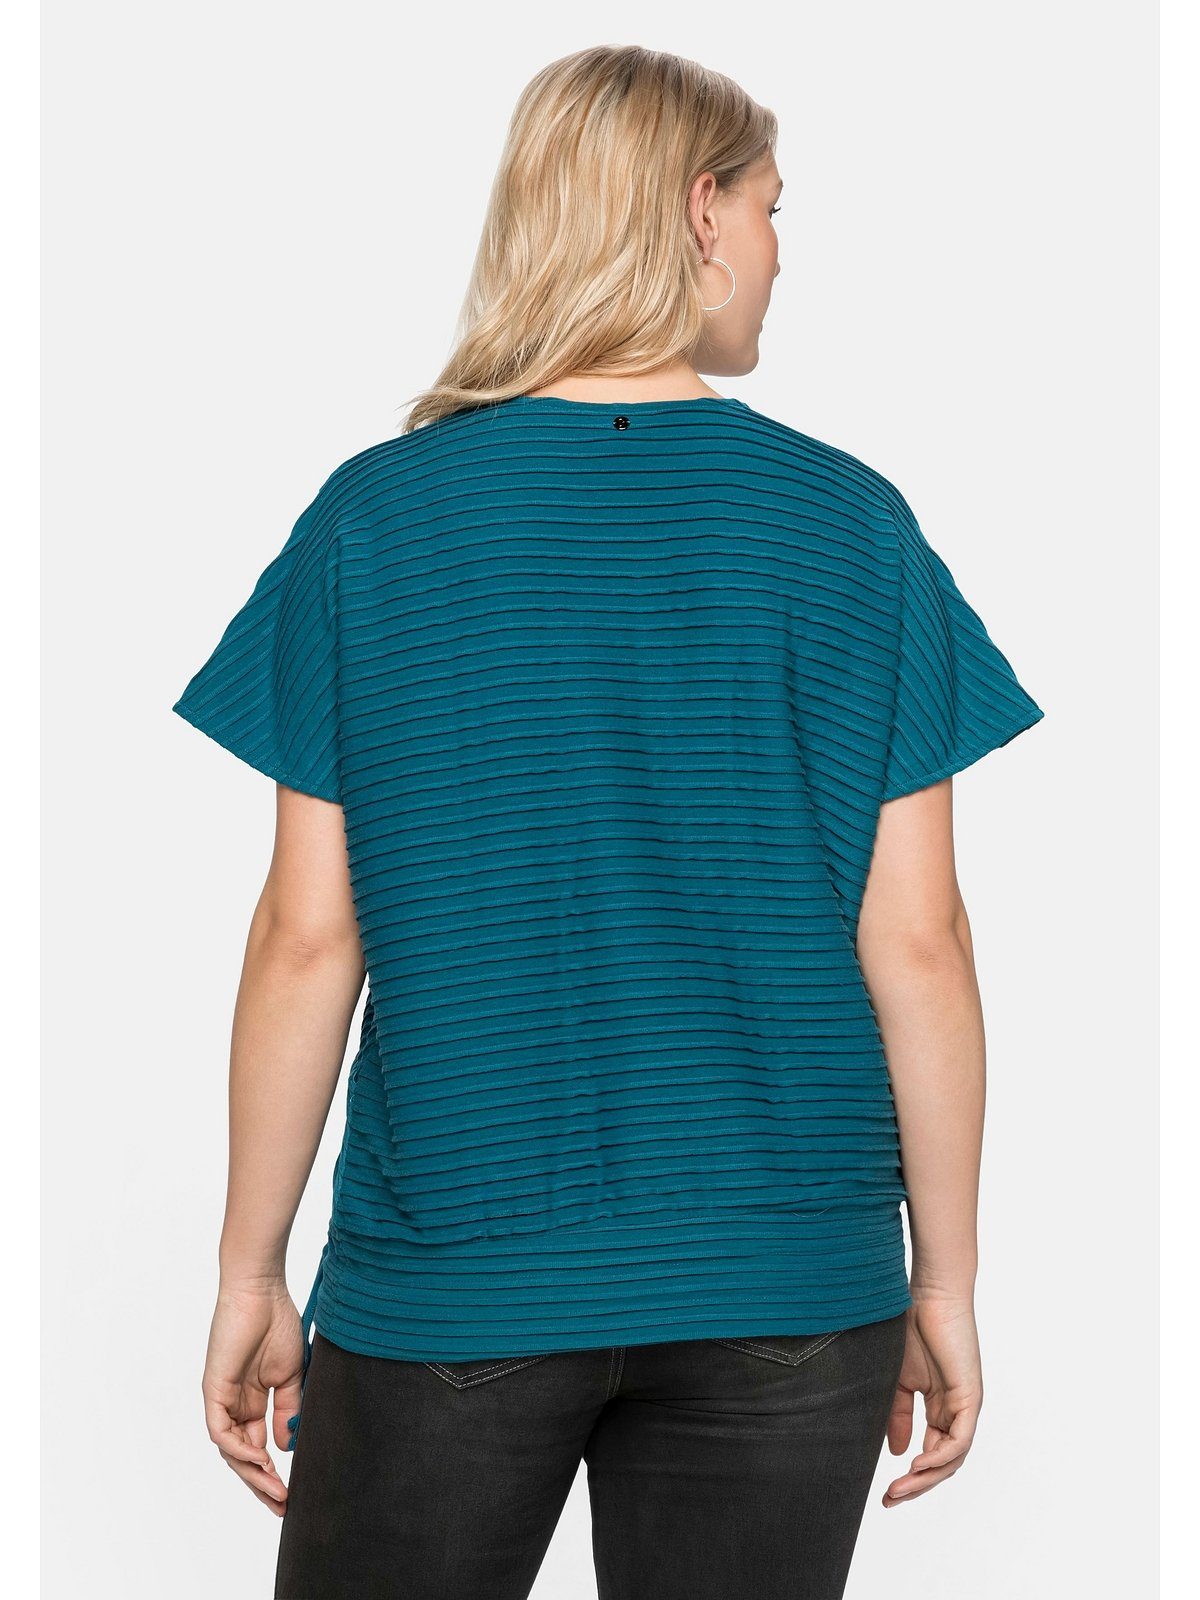 Sheego T-Shirt Große Größen in Wickeloptik, mit Biesen aufwendigen